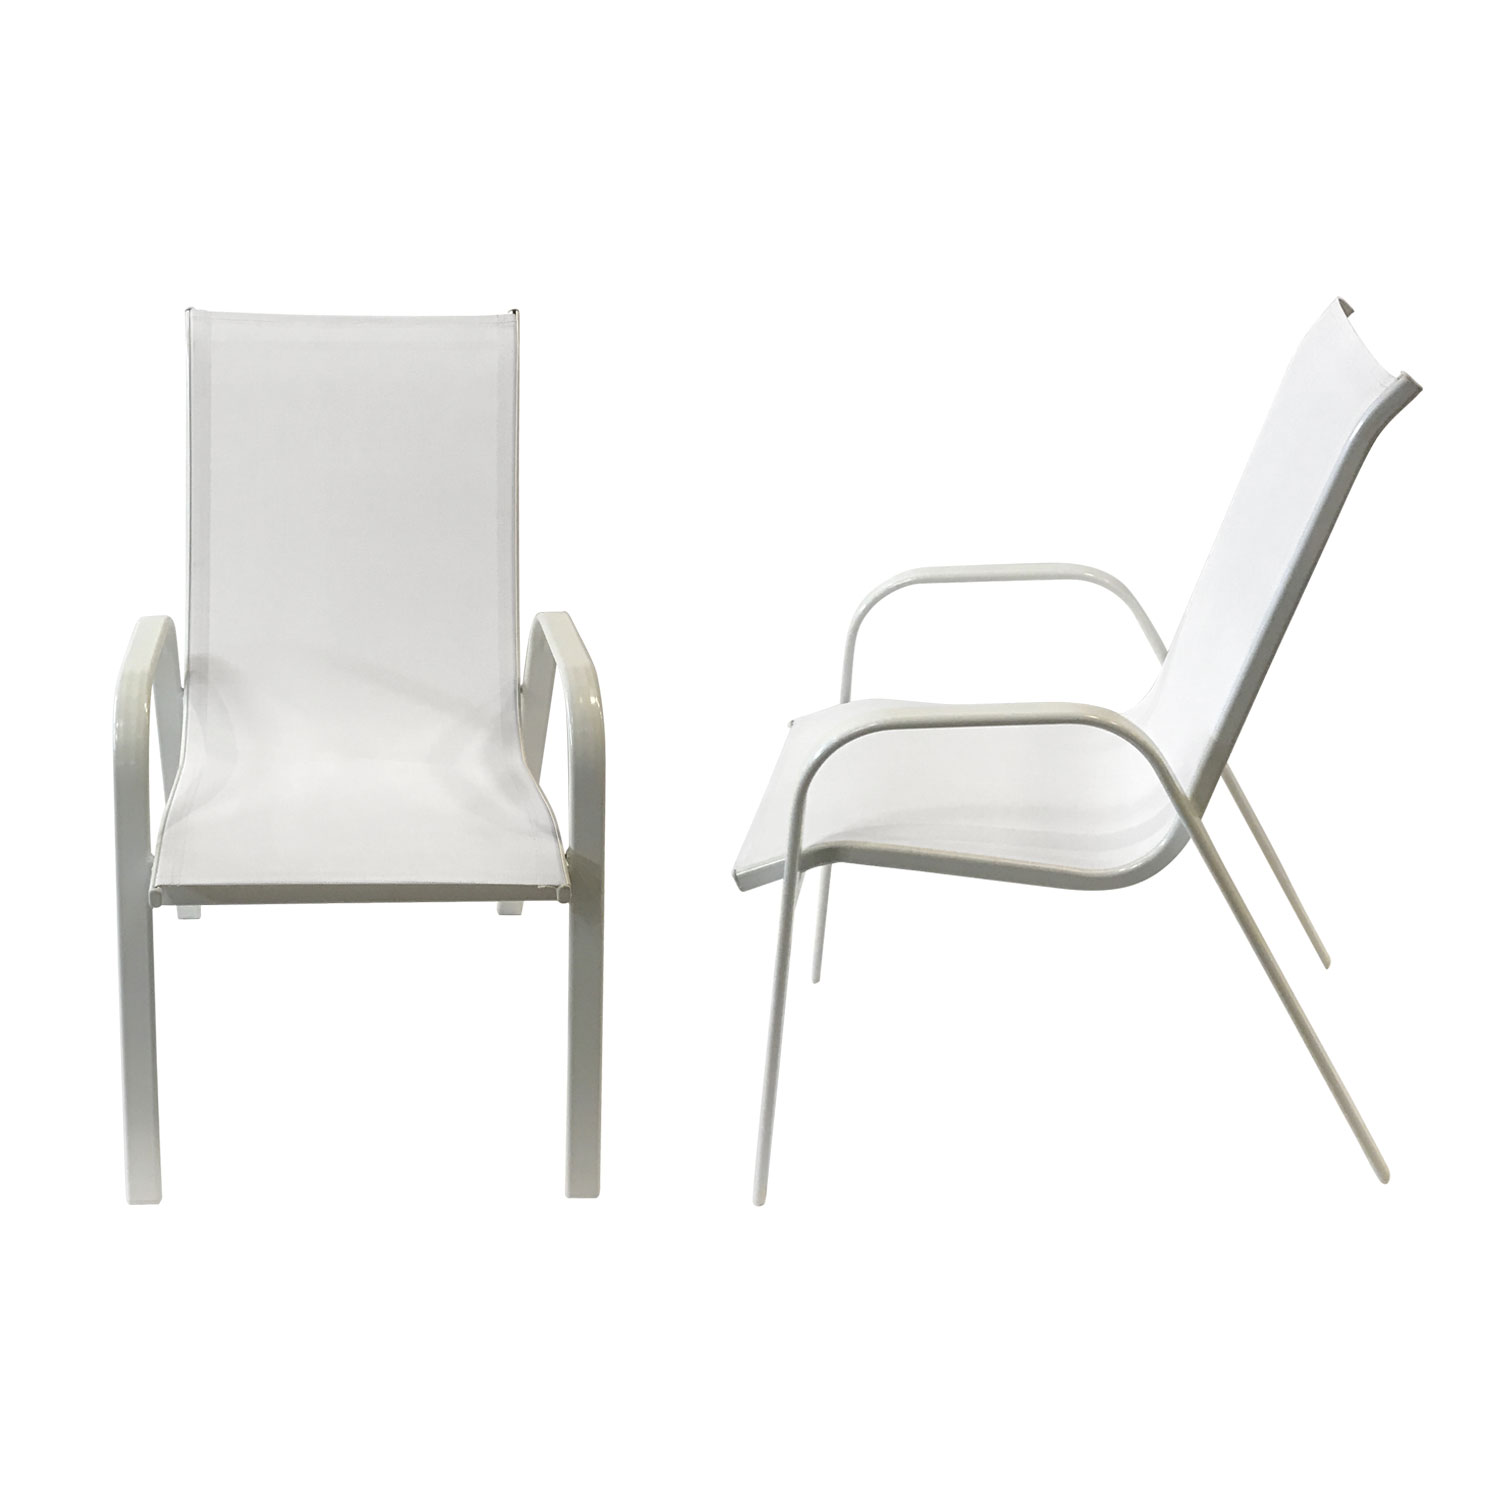 Lote de 6 sillas MARBELLA en textileno blanco - aluminio blanco